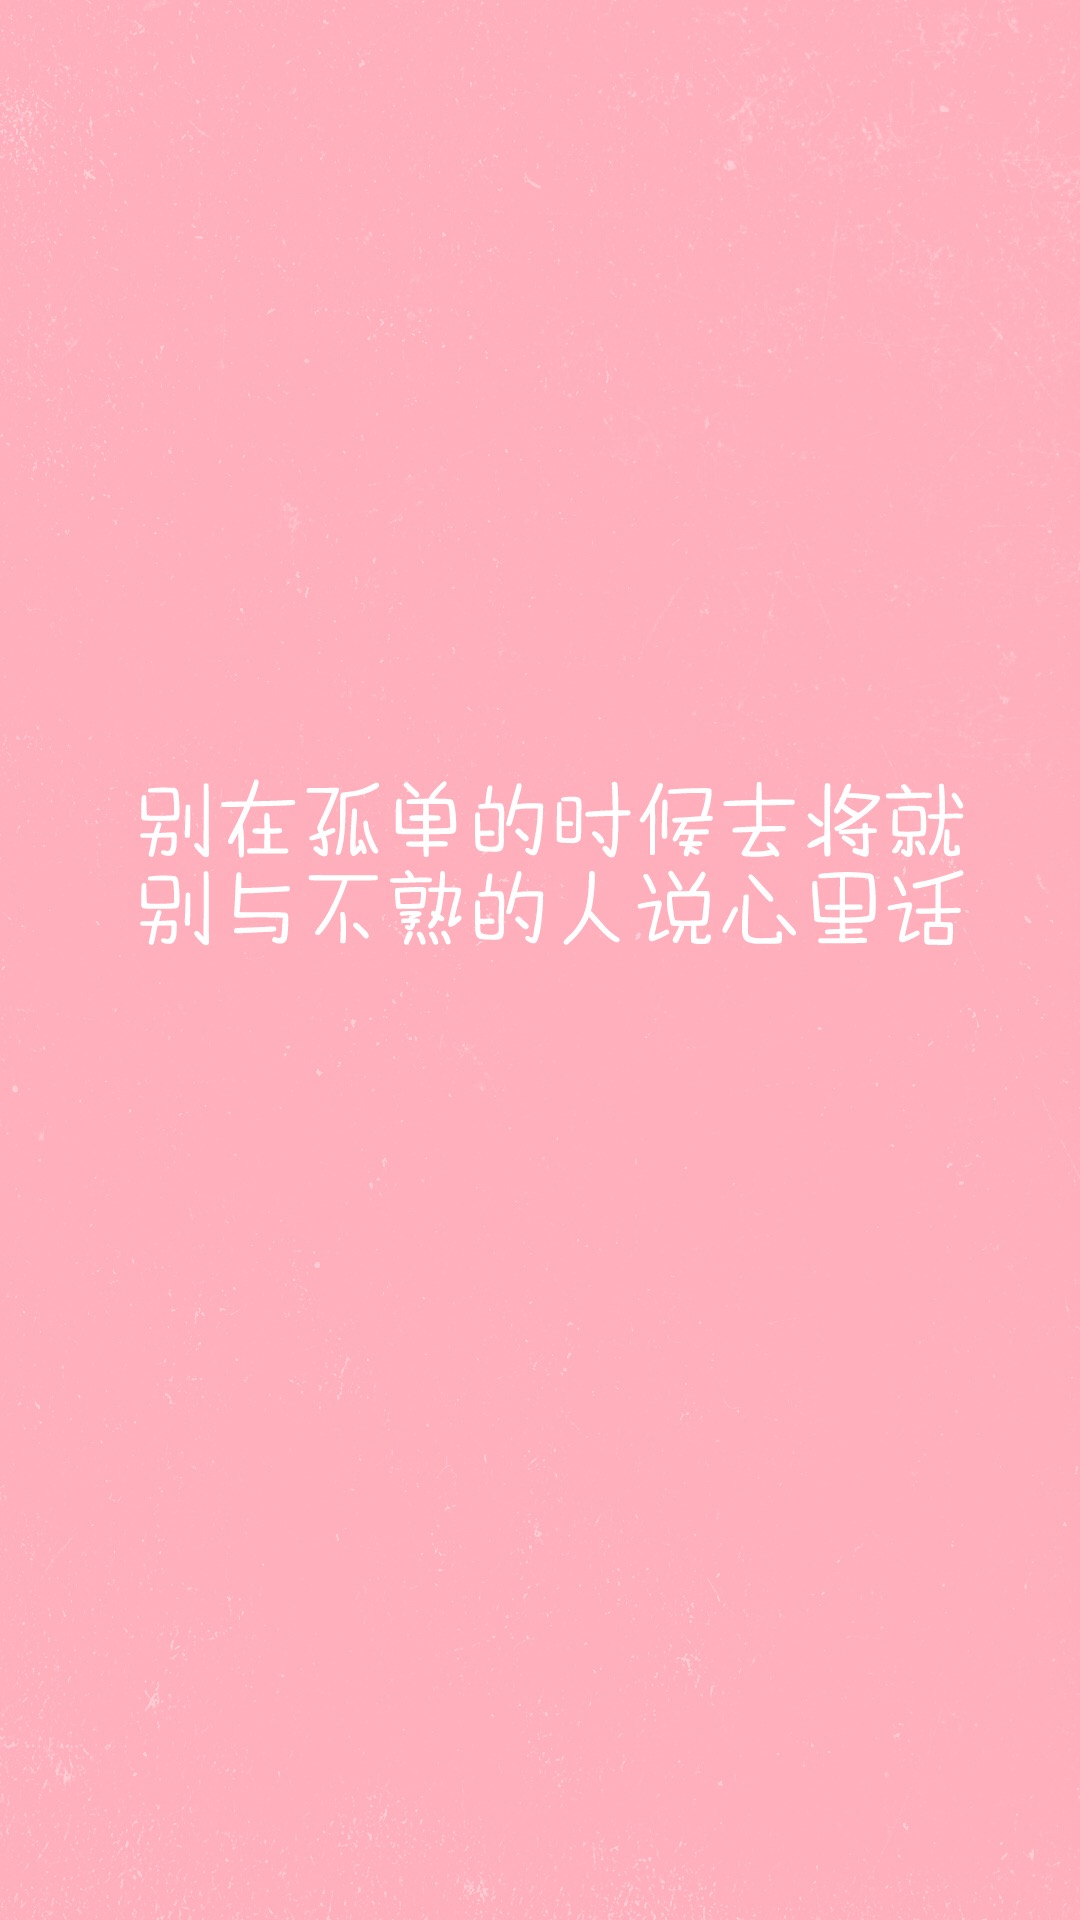 粉色系文字壁纸 别像风一样来了又走(6)